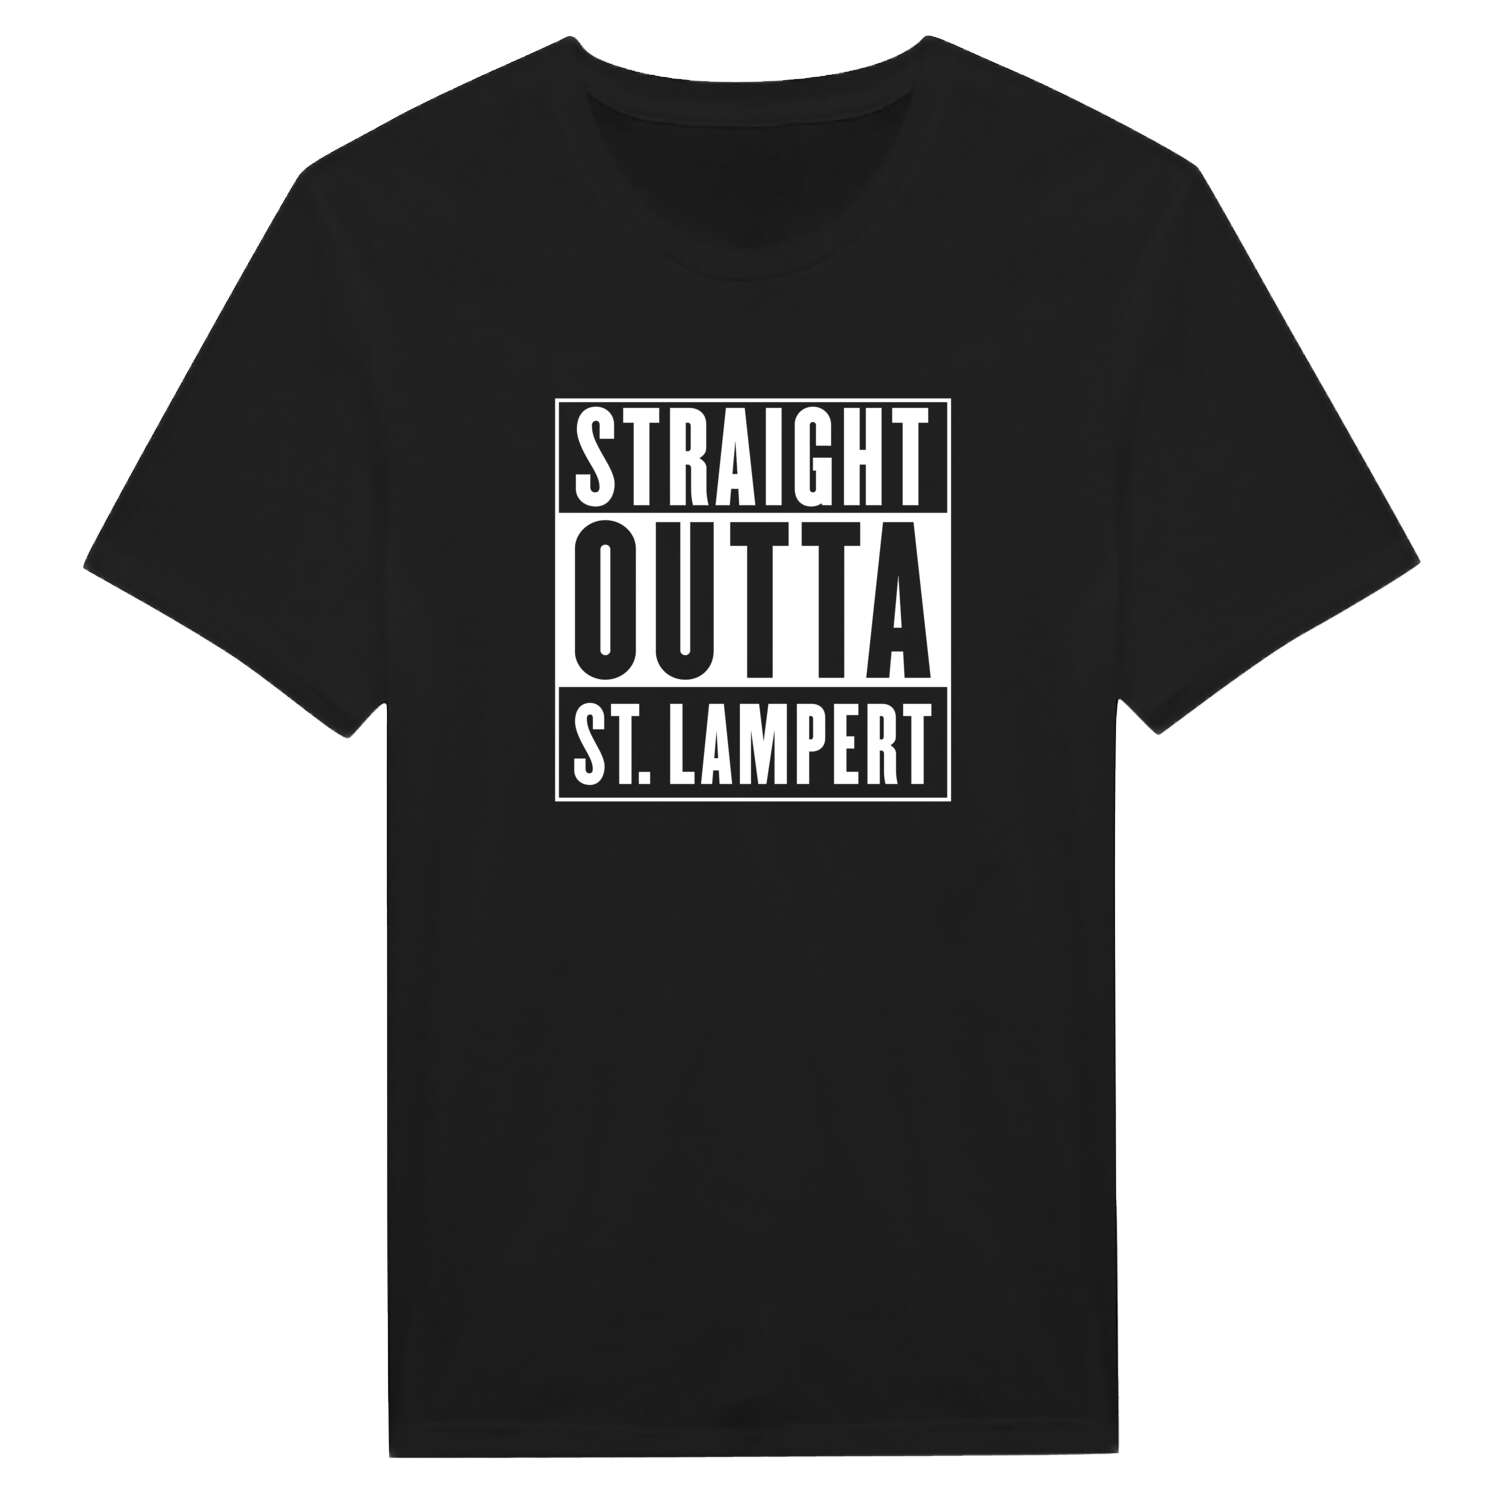 St. Lampert T-Shirt »Straight Outta«